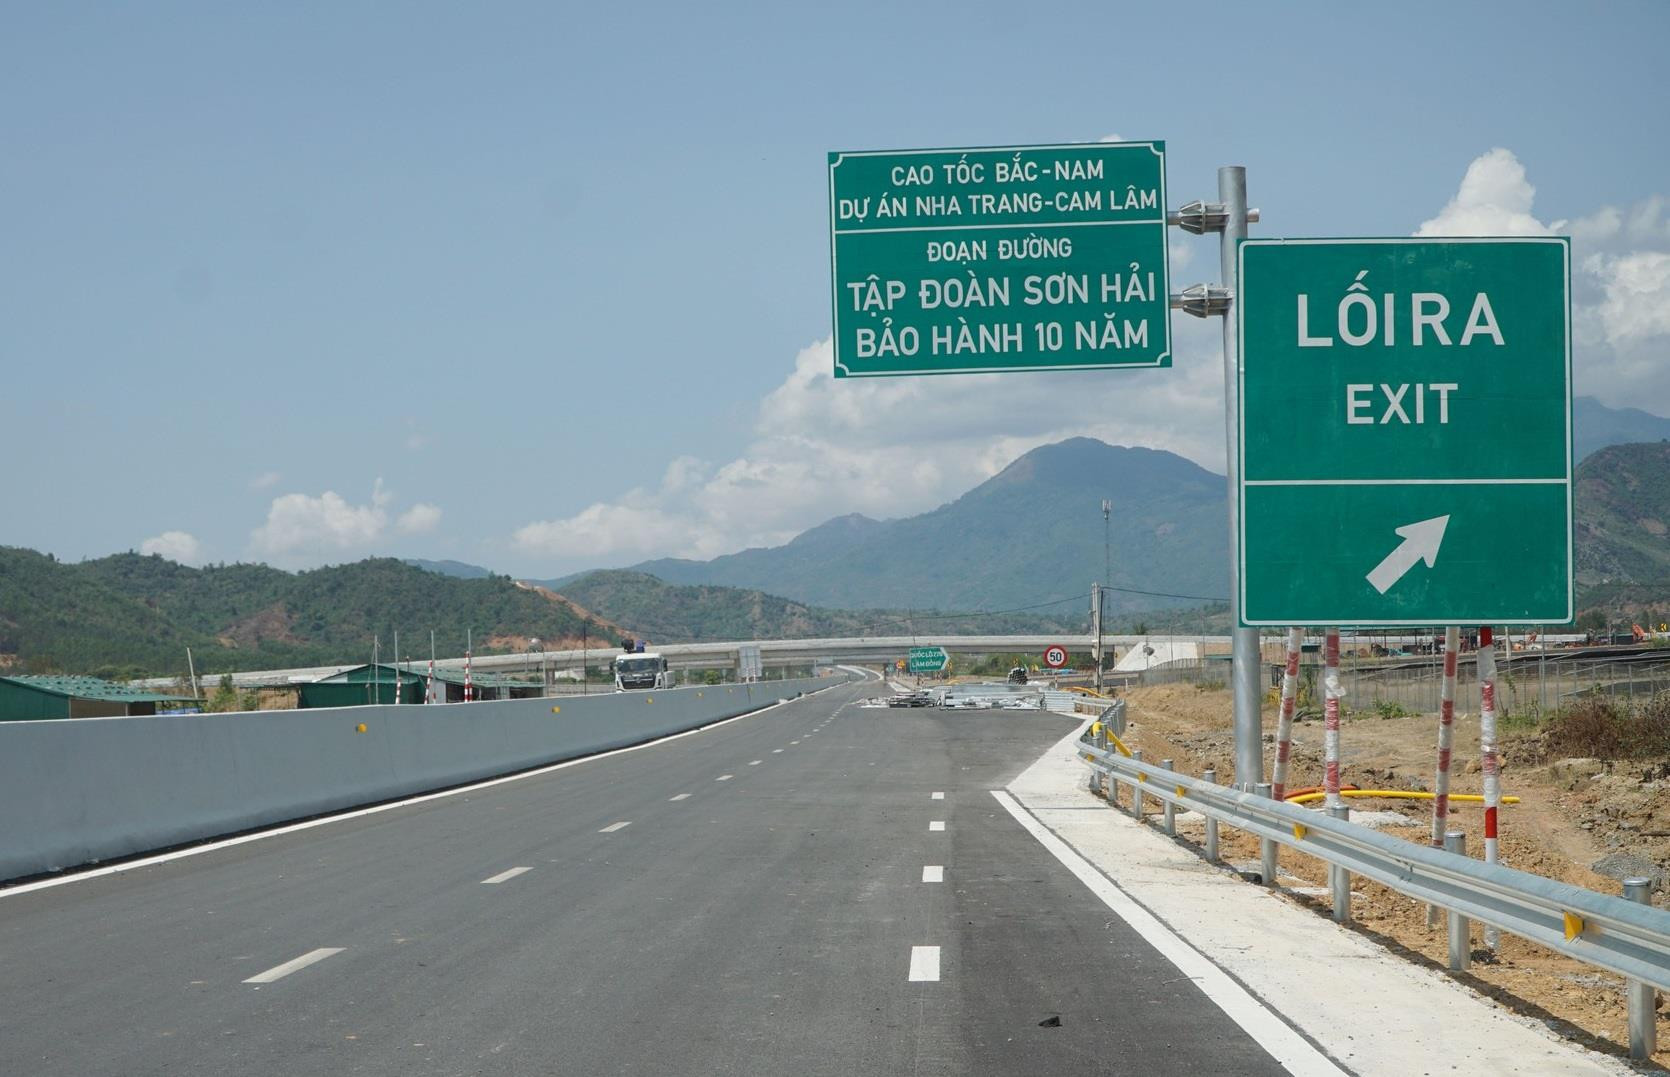 Tập đoàn Sơn Hải được chấp thuận lập báo cáo nghiên cứu tiền khả thi dự án xây dựng đường bộ cao tốc Cam Lộ - Lao Bảo, Quảng Trị - Ảnh 1.